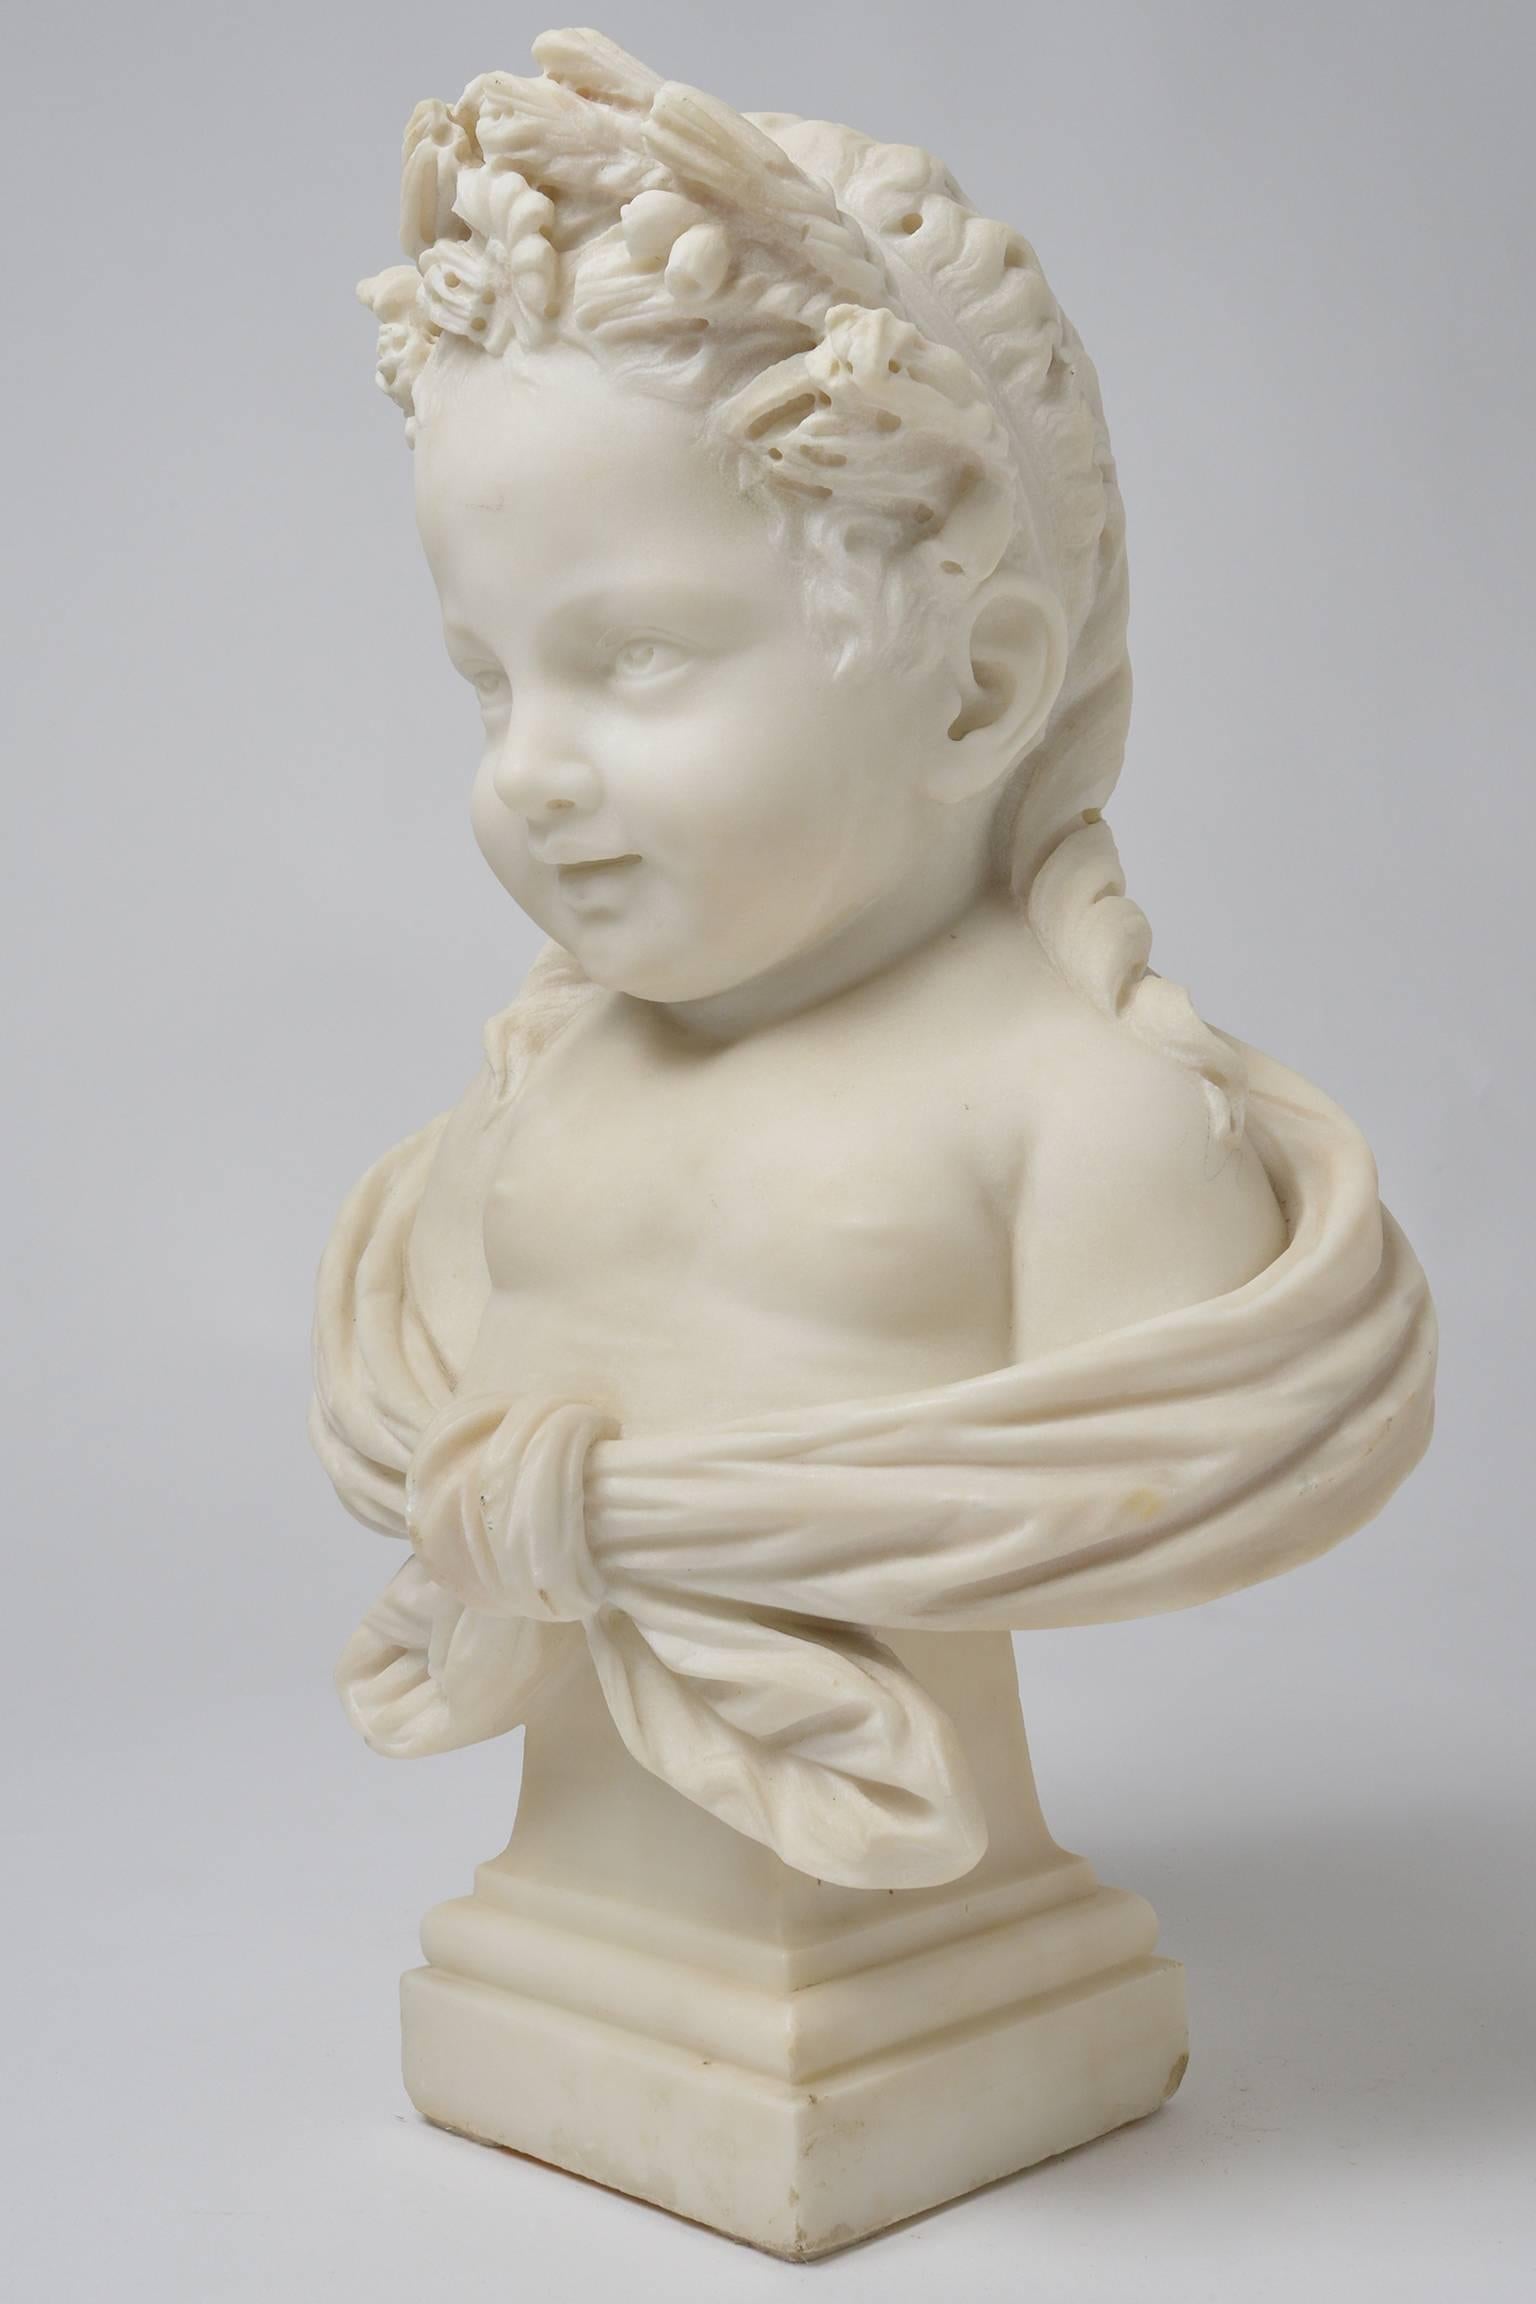 Magnifique statue en marbre blanc d'une petite fille souriante et douce, avec des fleurs dans les cheveux. Une statue en marbre très inhabituelle.
nr. O/7552.